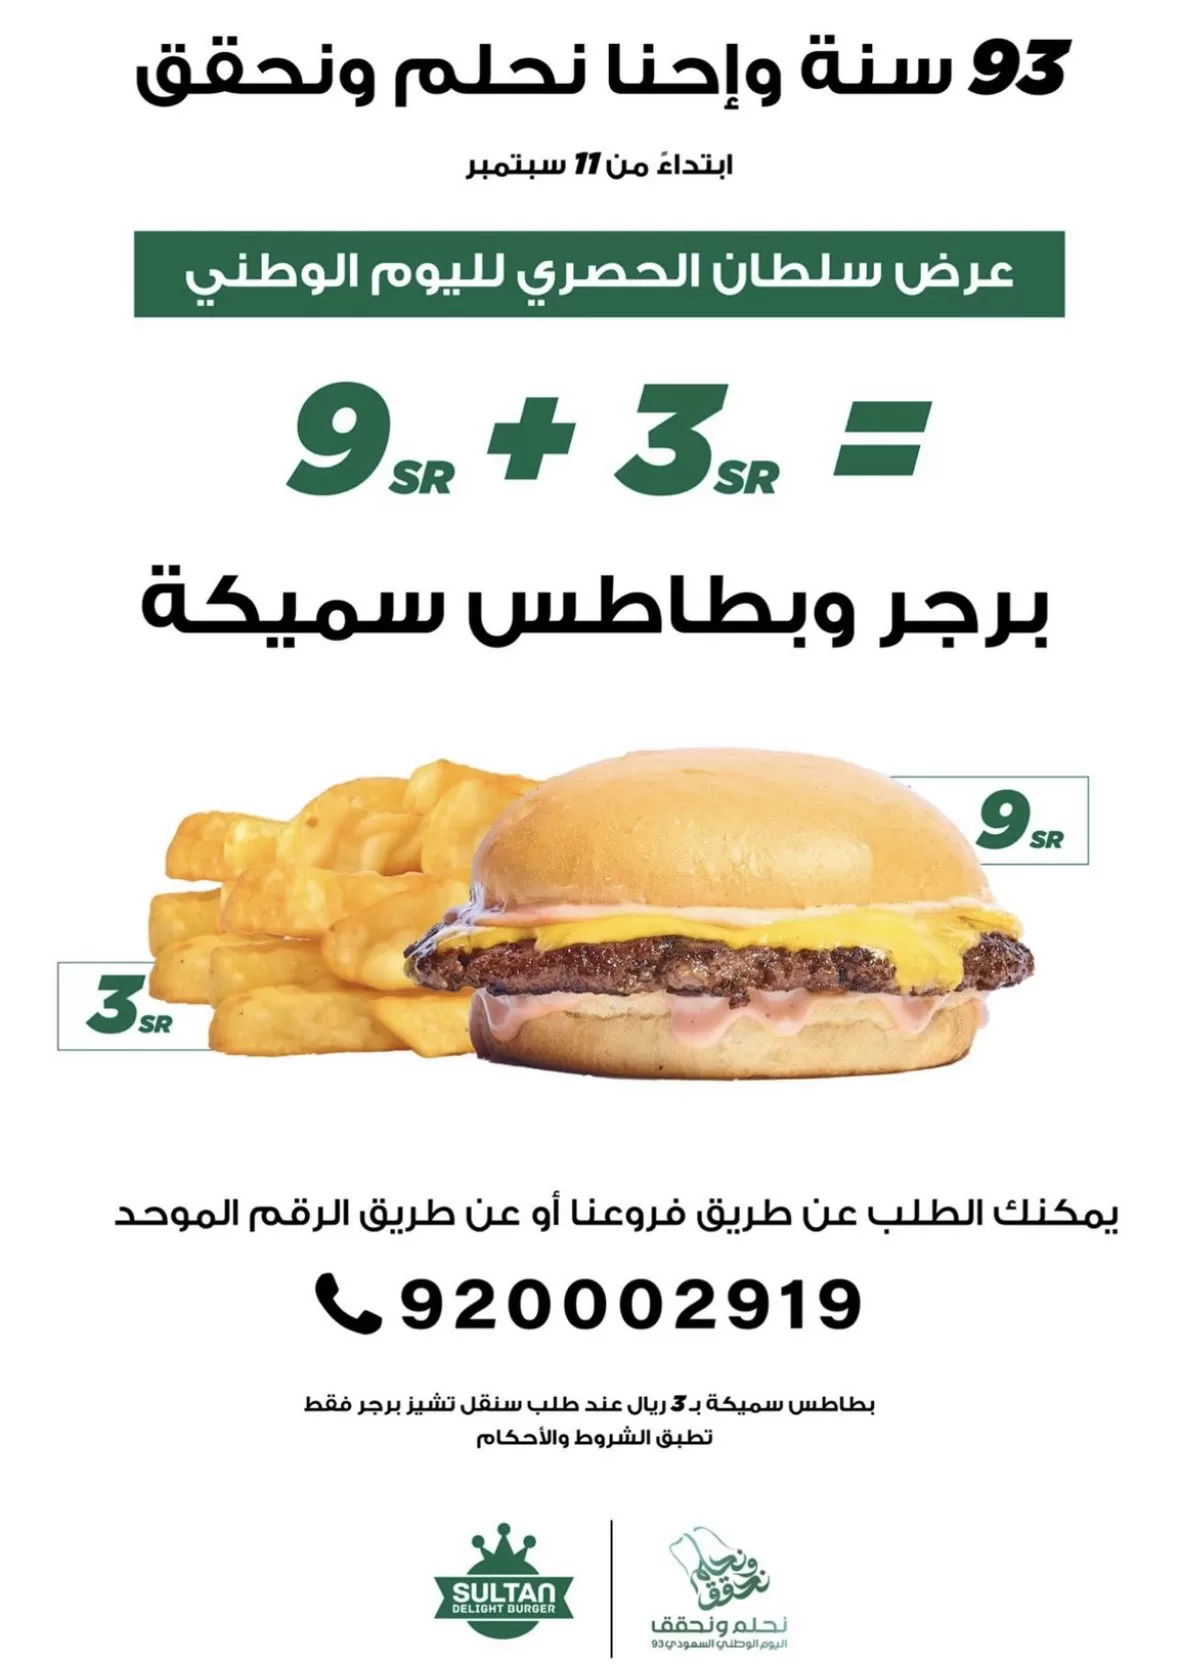 F51pUugW8AM3WHV jpg - عروض مطاعم السعودية في اليوم الوطني السعودي 93 بصفحة واحدة (محدثة يوميا )